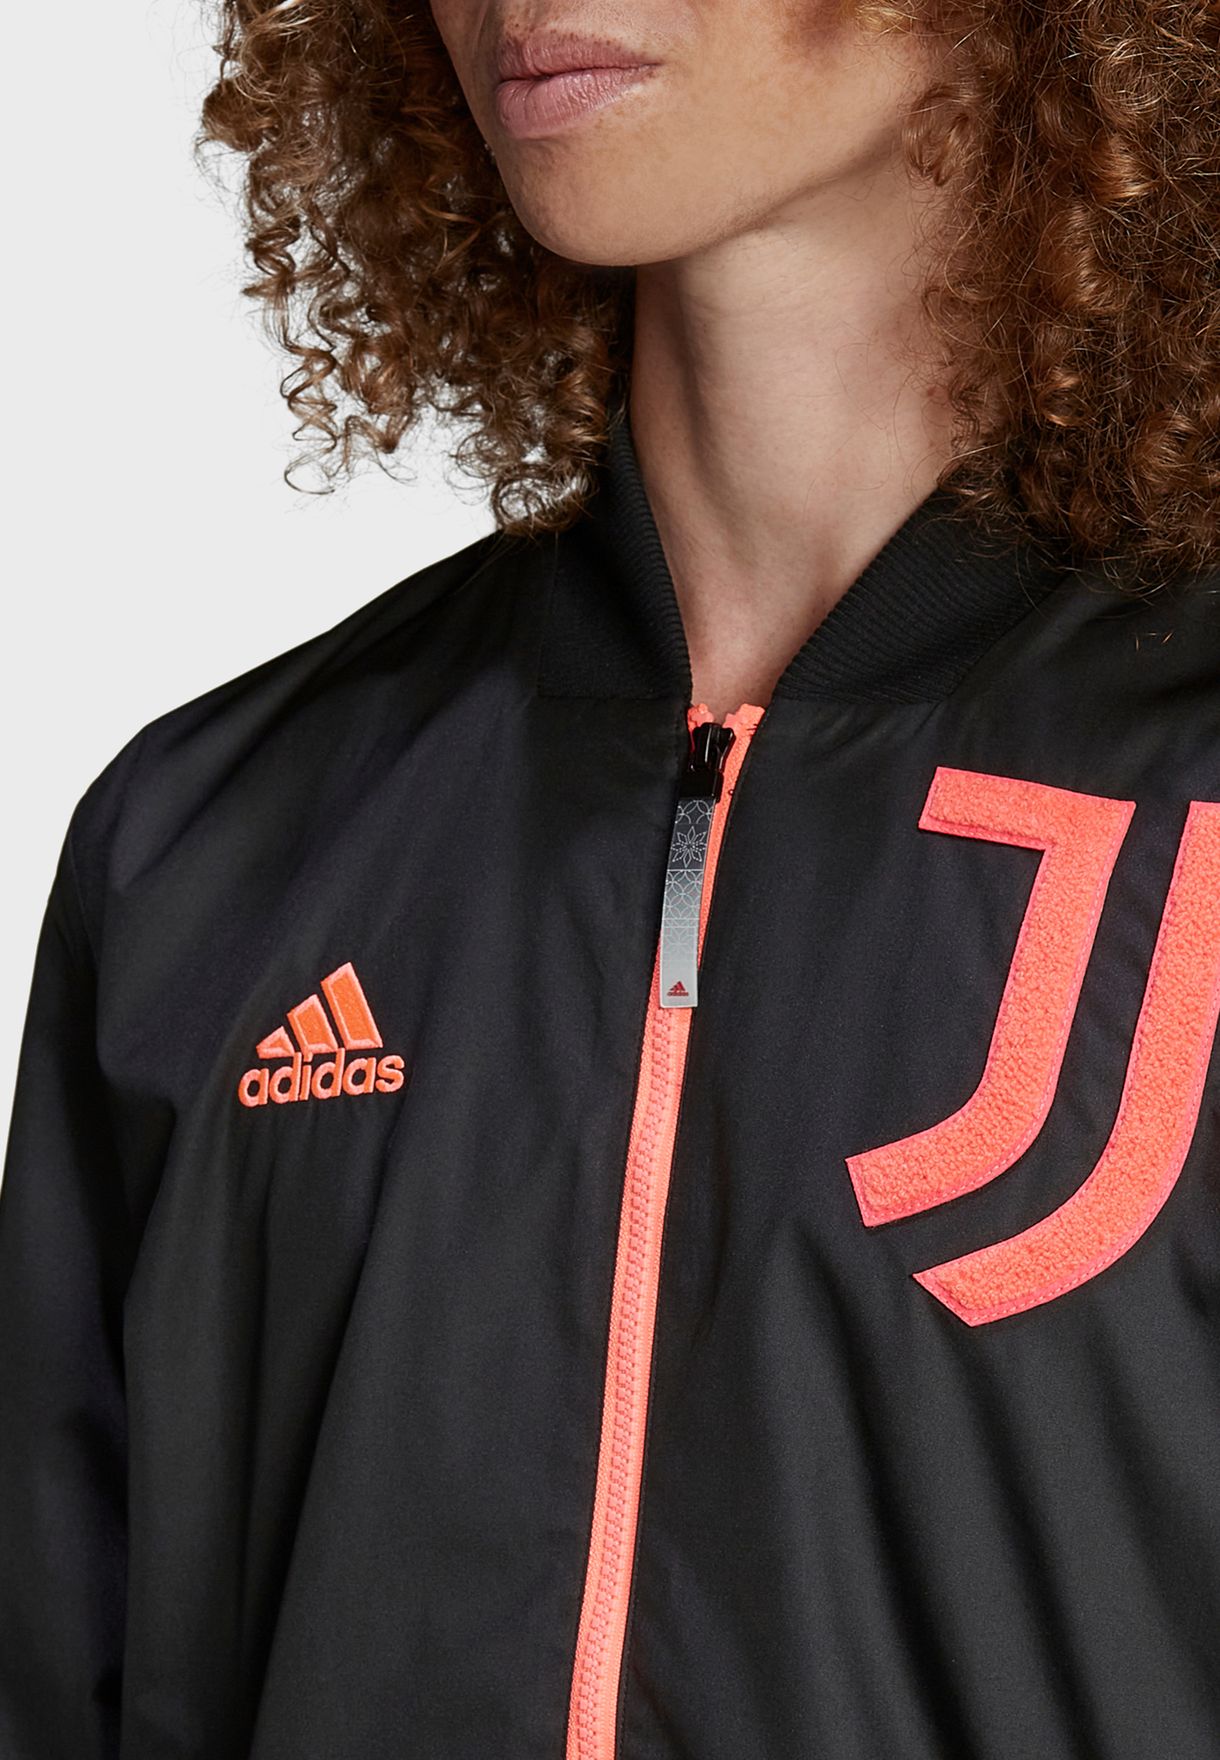 Juventus Bomber Jacket